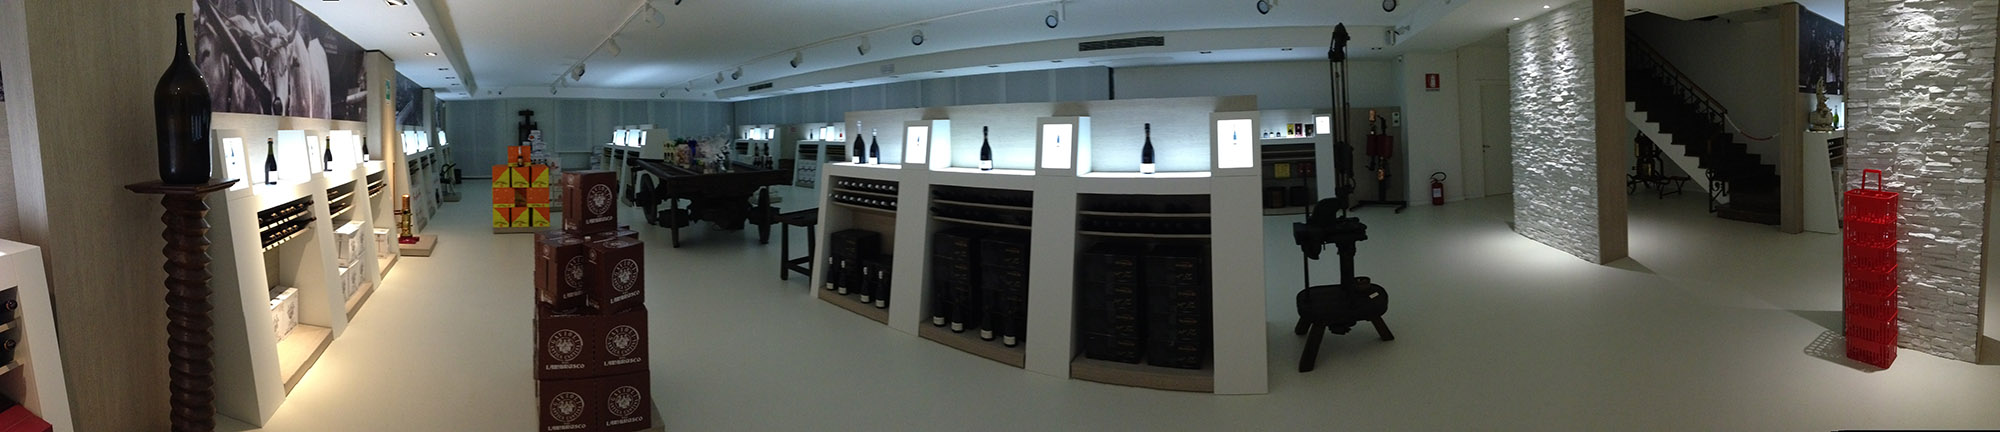 Showroom produttore vino - Nonantola (MO)